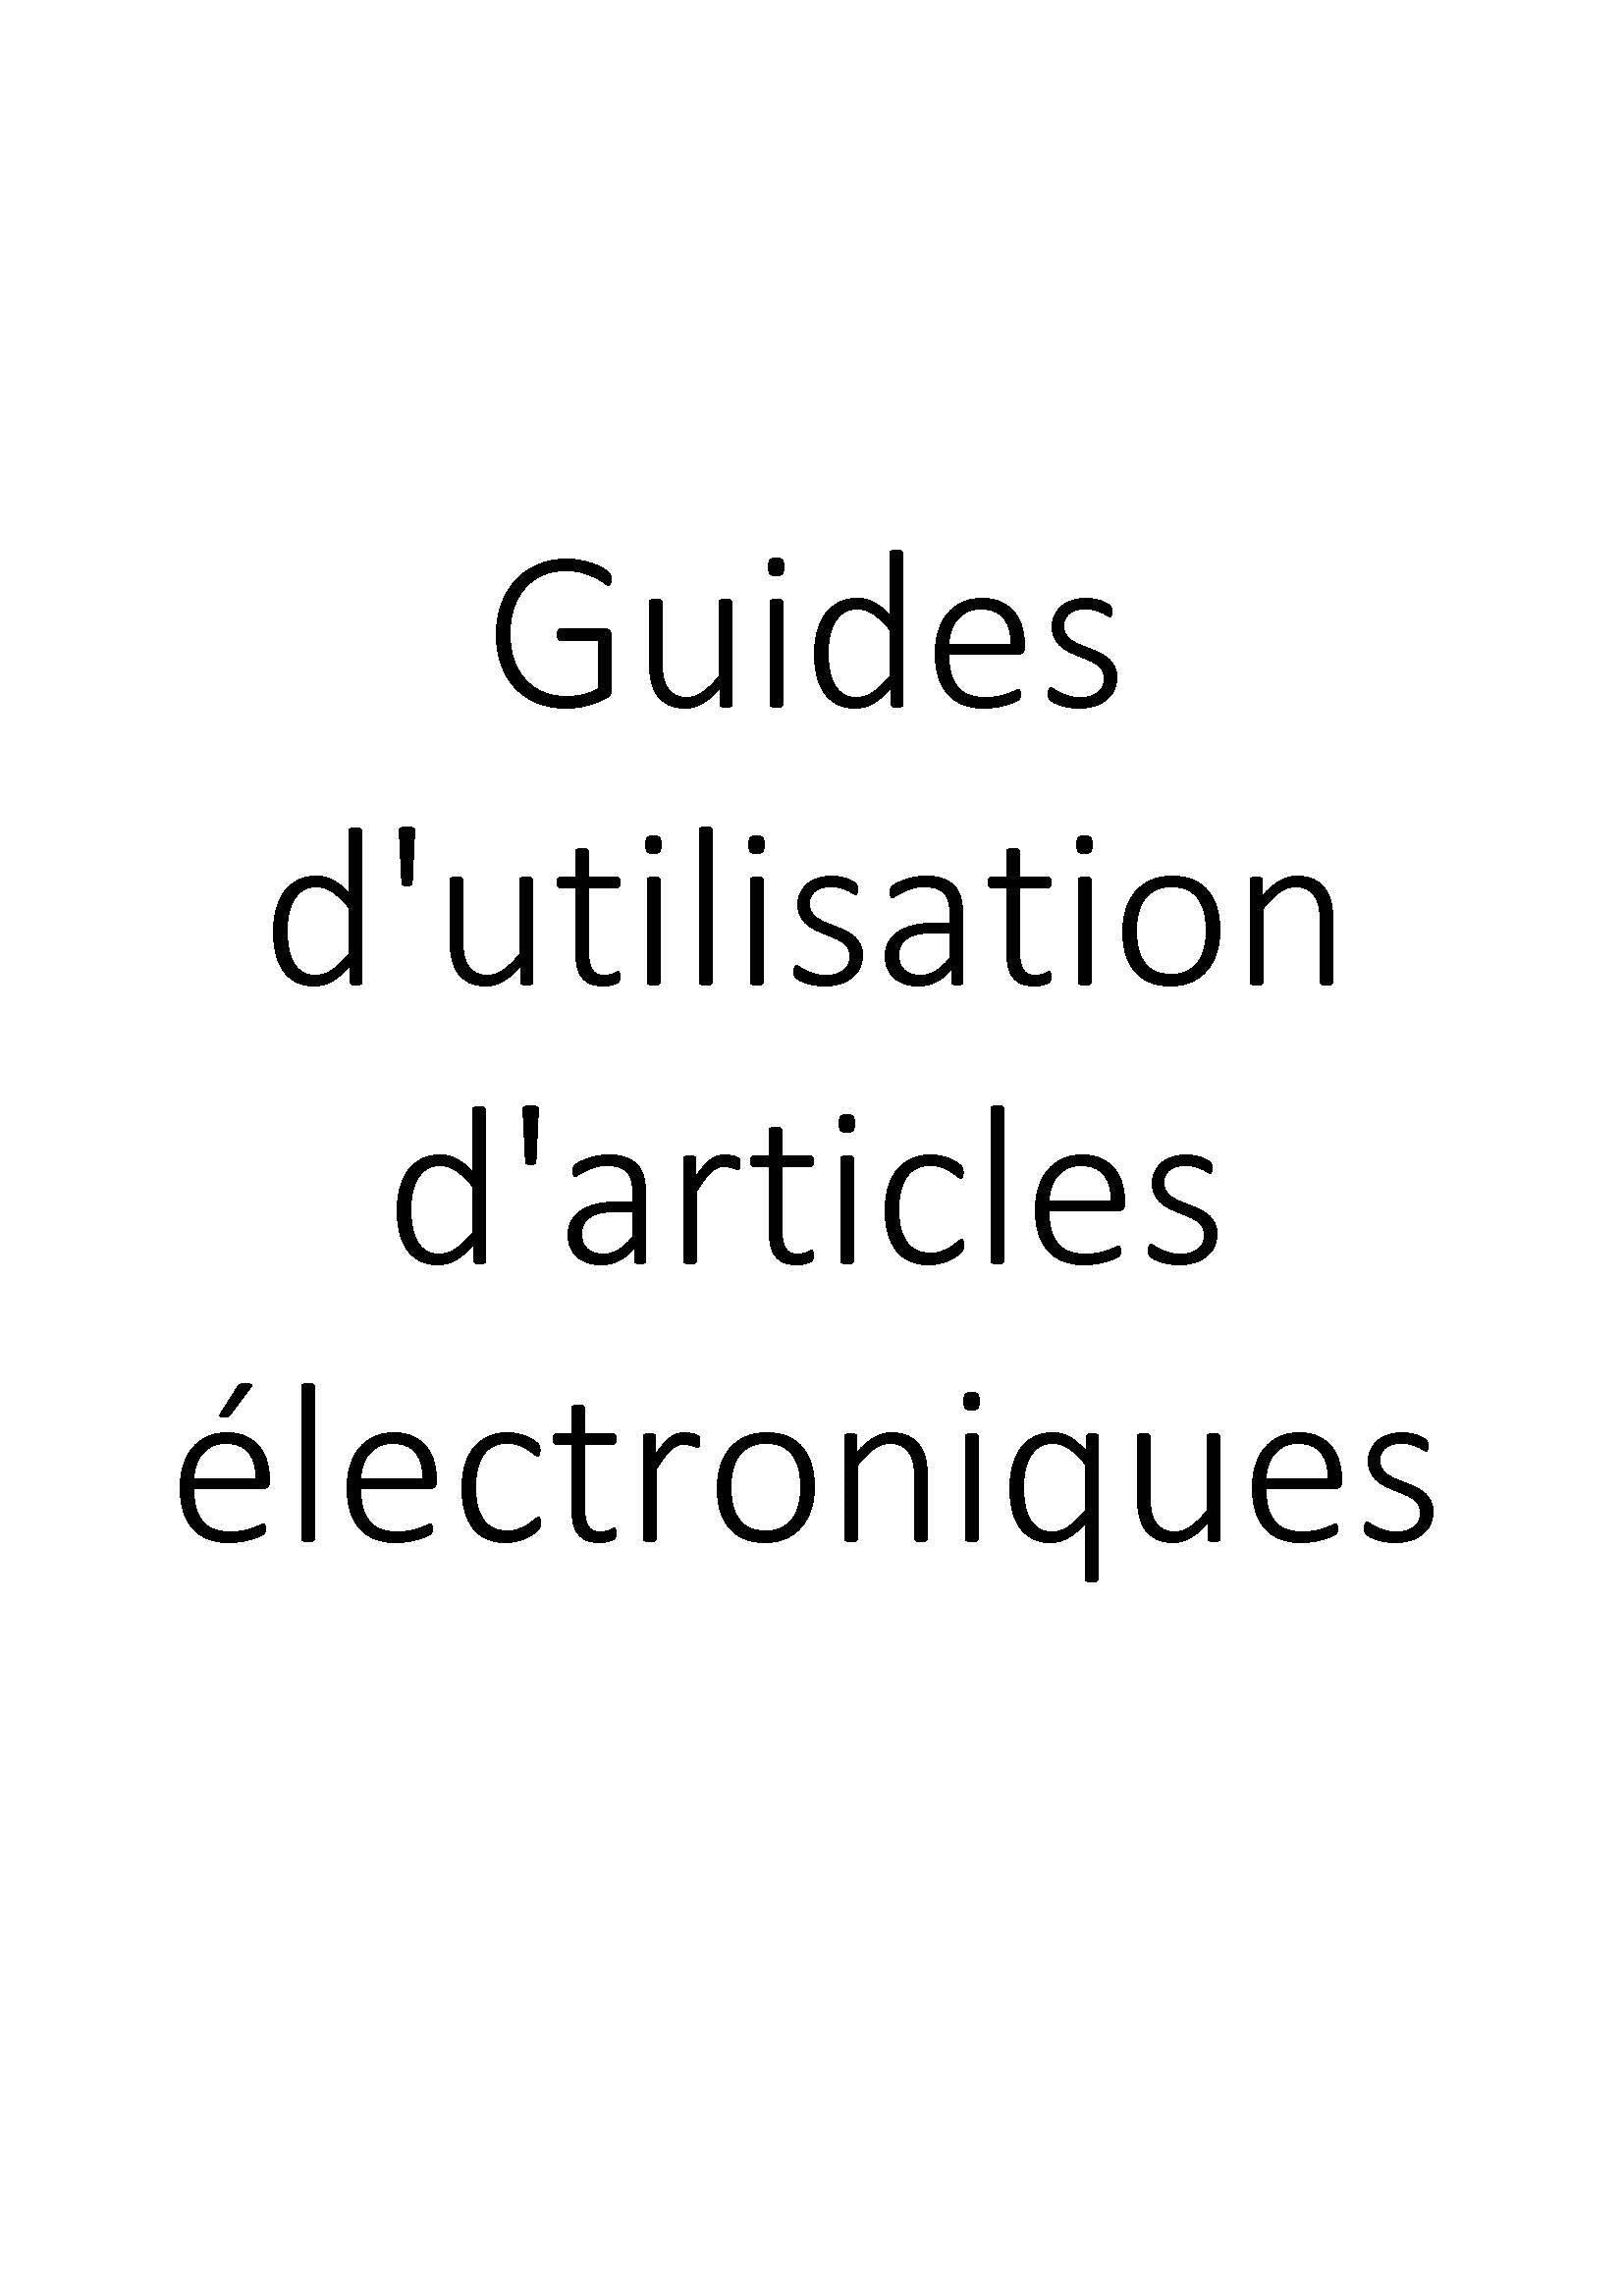 Guides d'utilisation d'articles électroniques clicktofournisseur.com